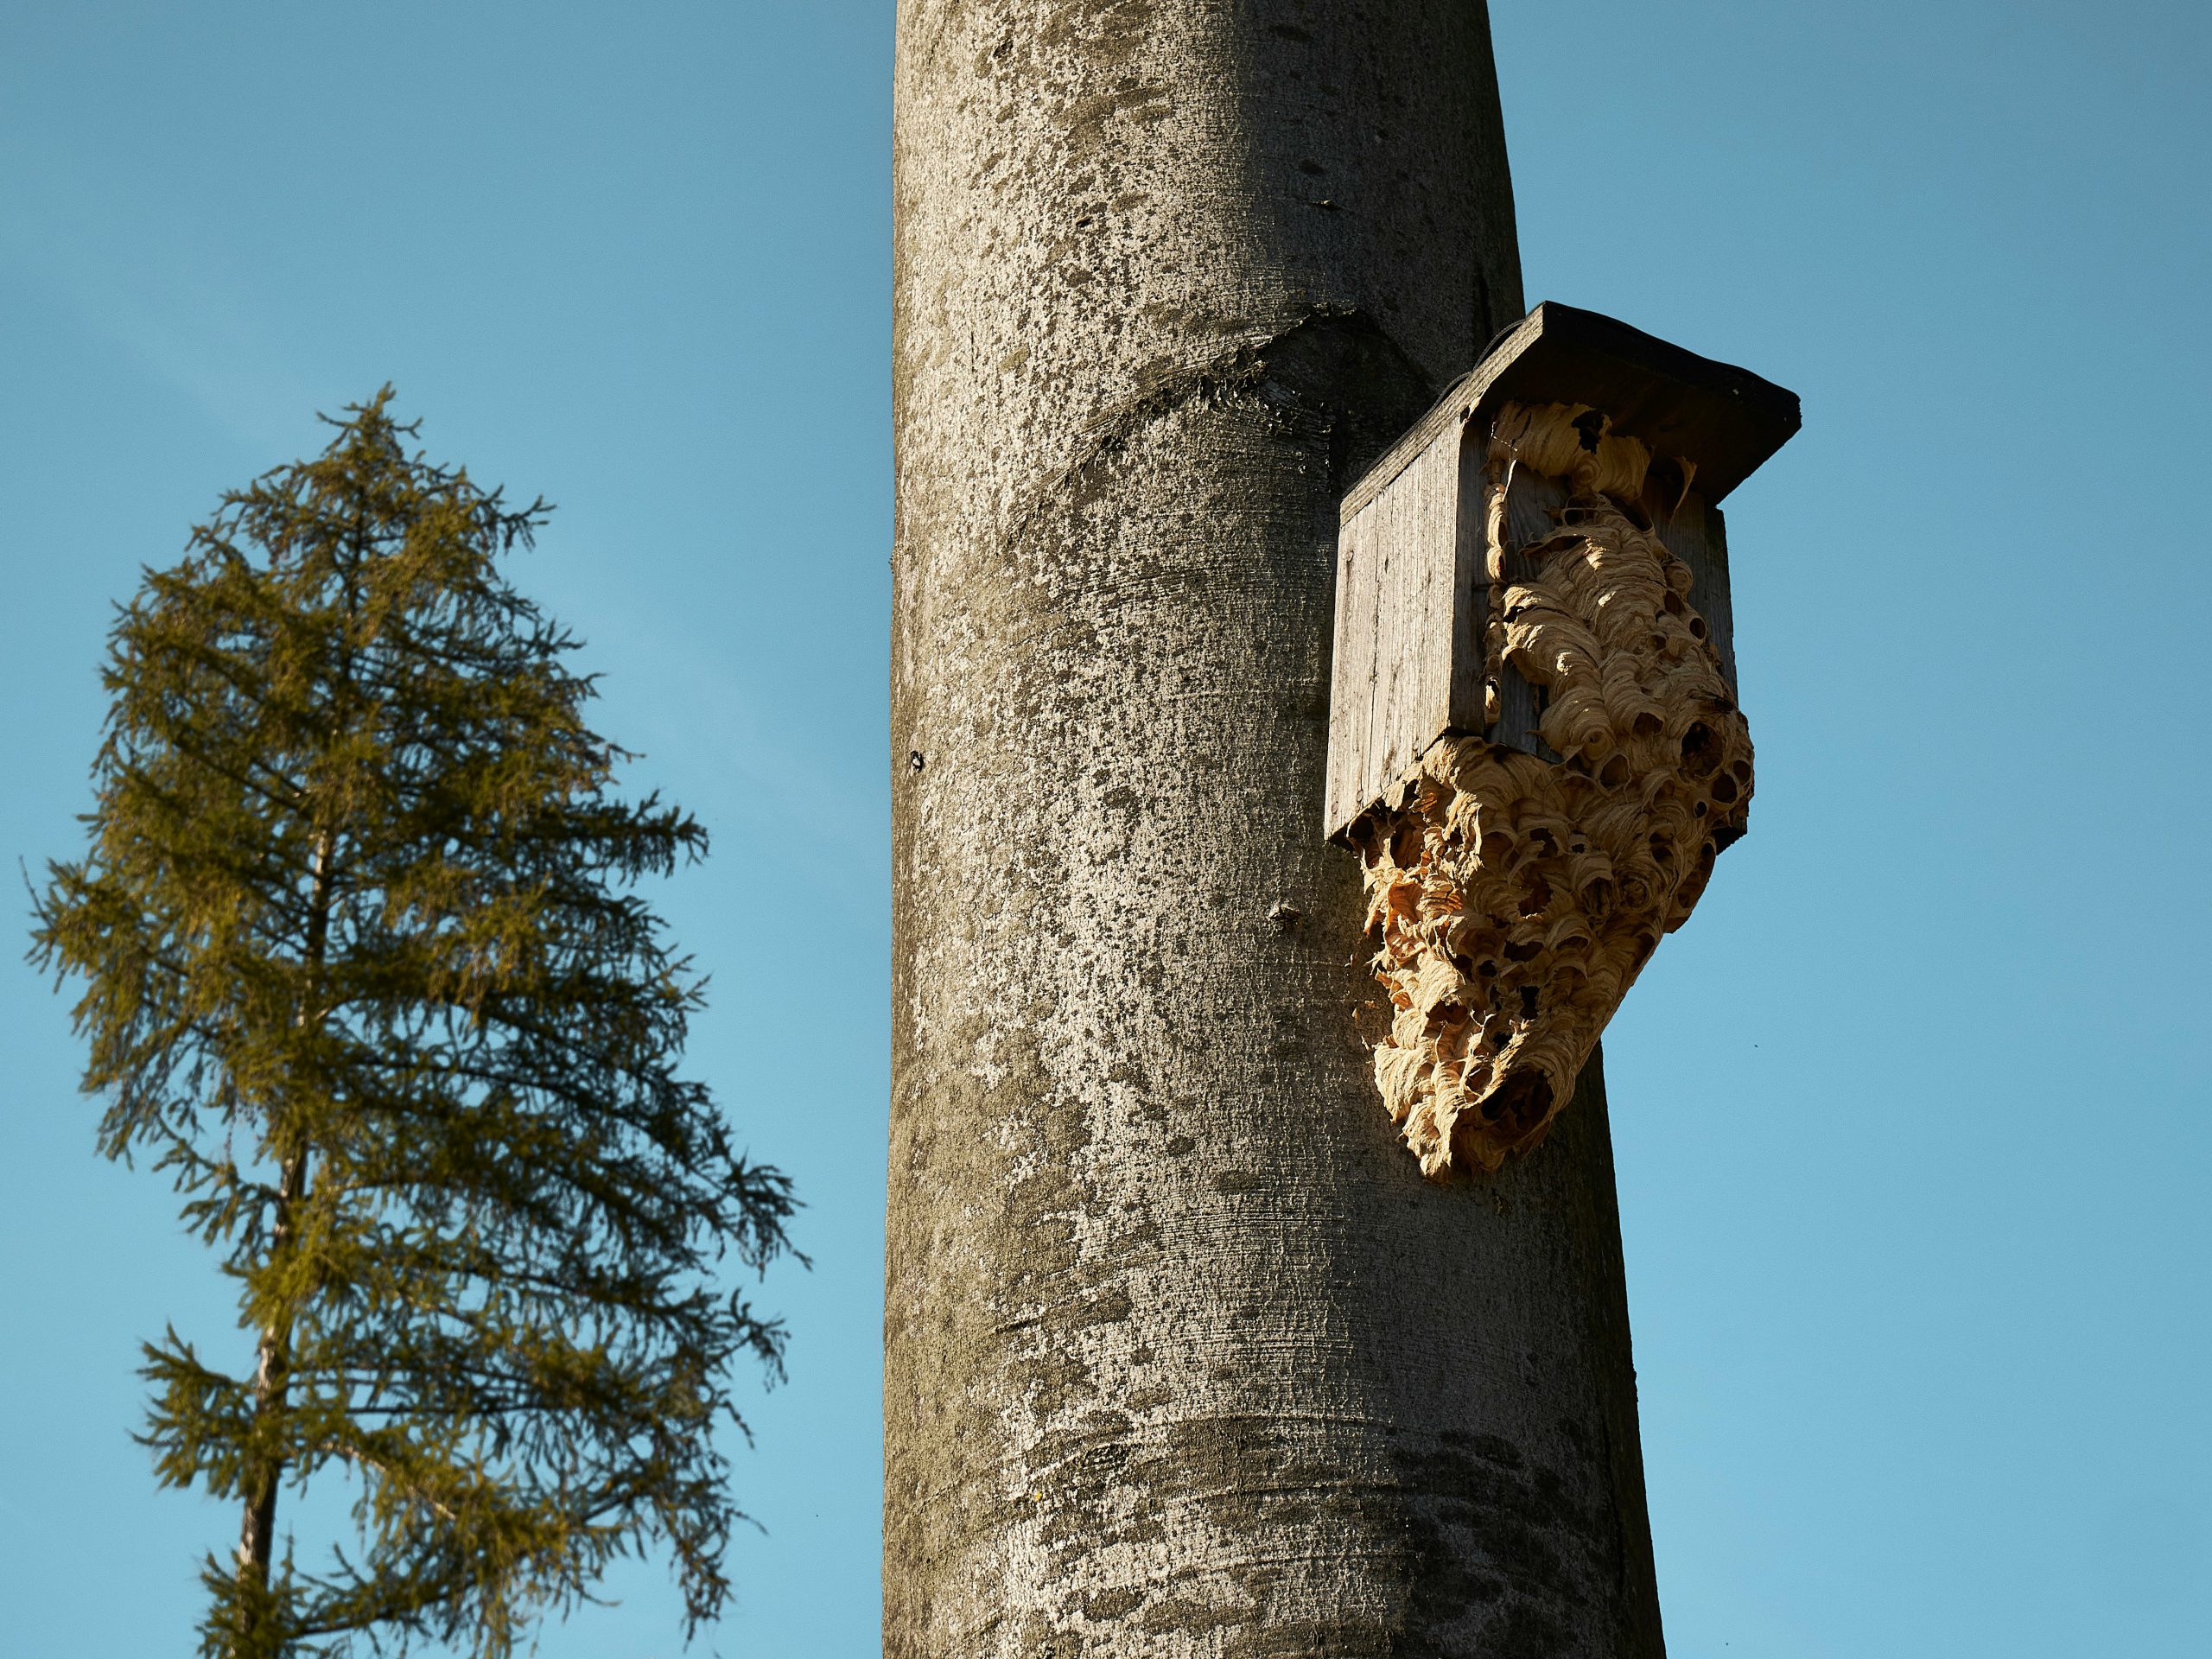 Gniazdo szerszeni na drzewie w ogródku które wymaga usuwanie gniazd szerszeni